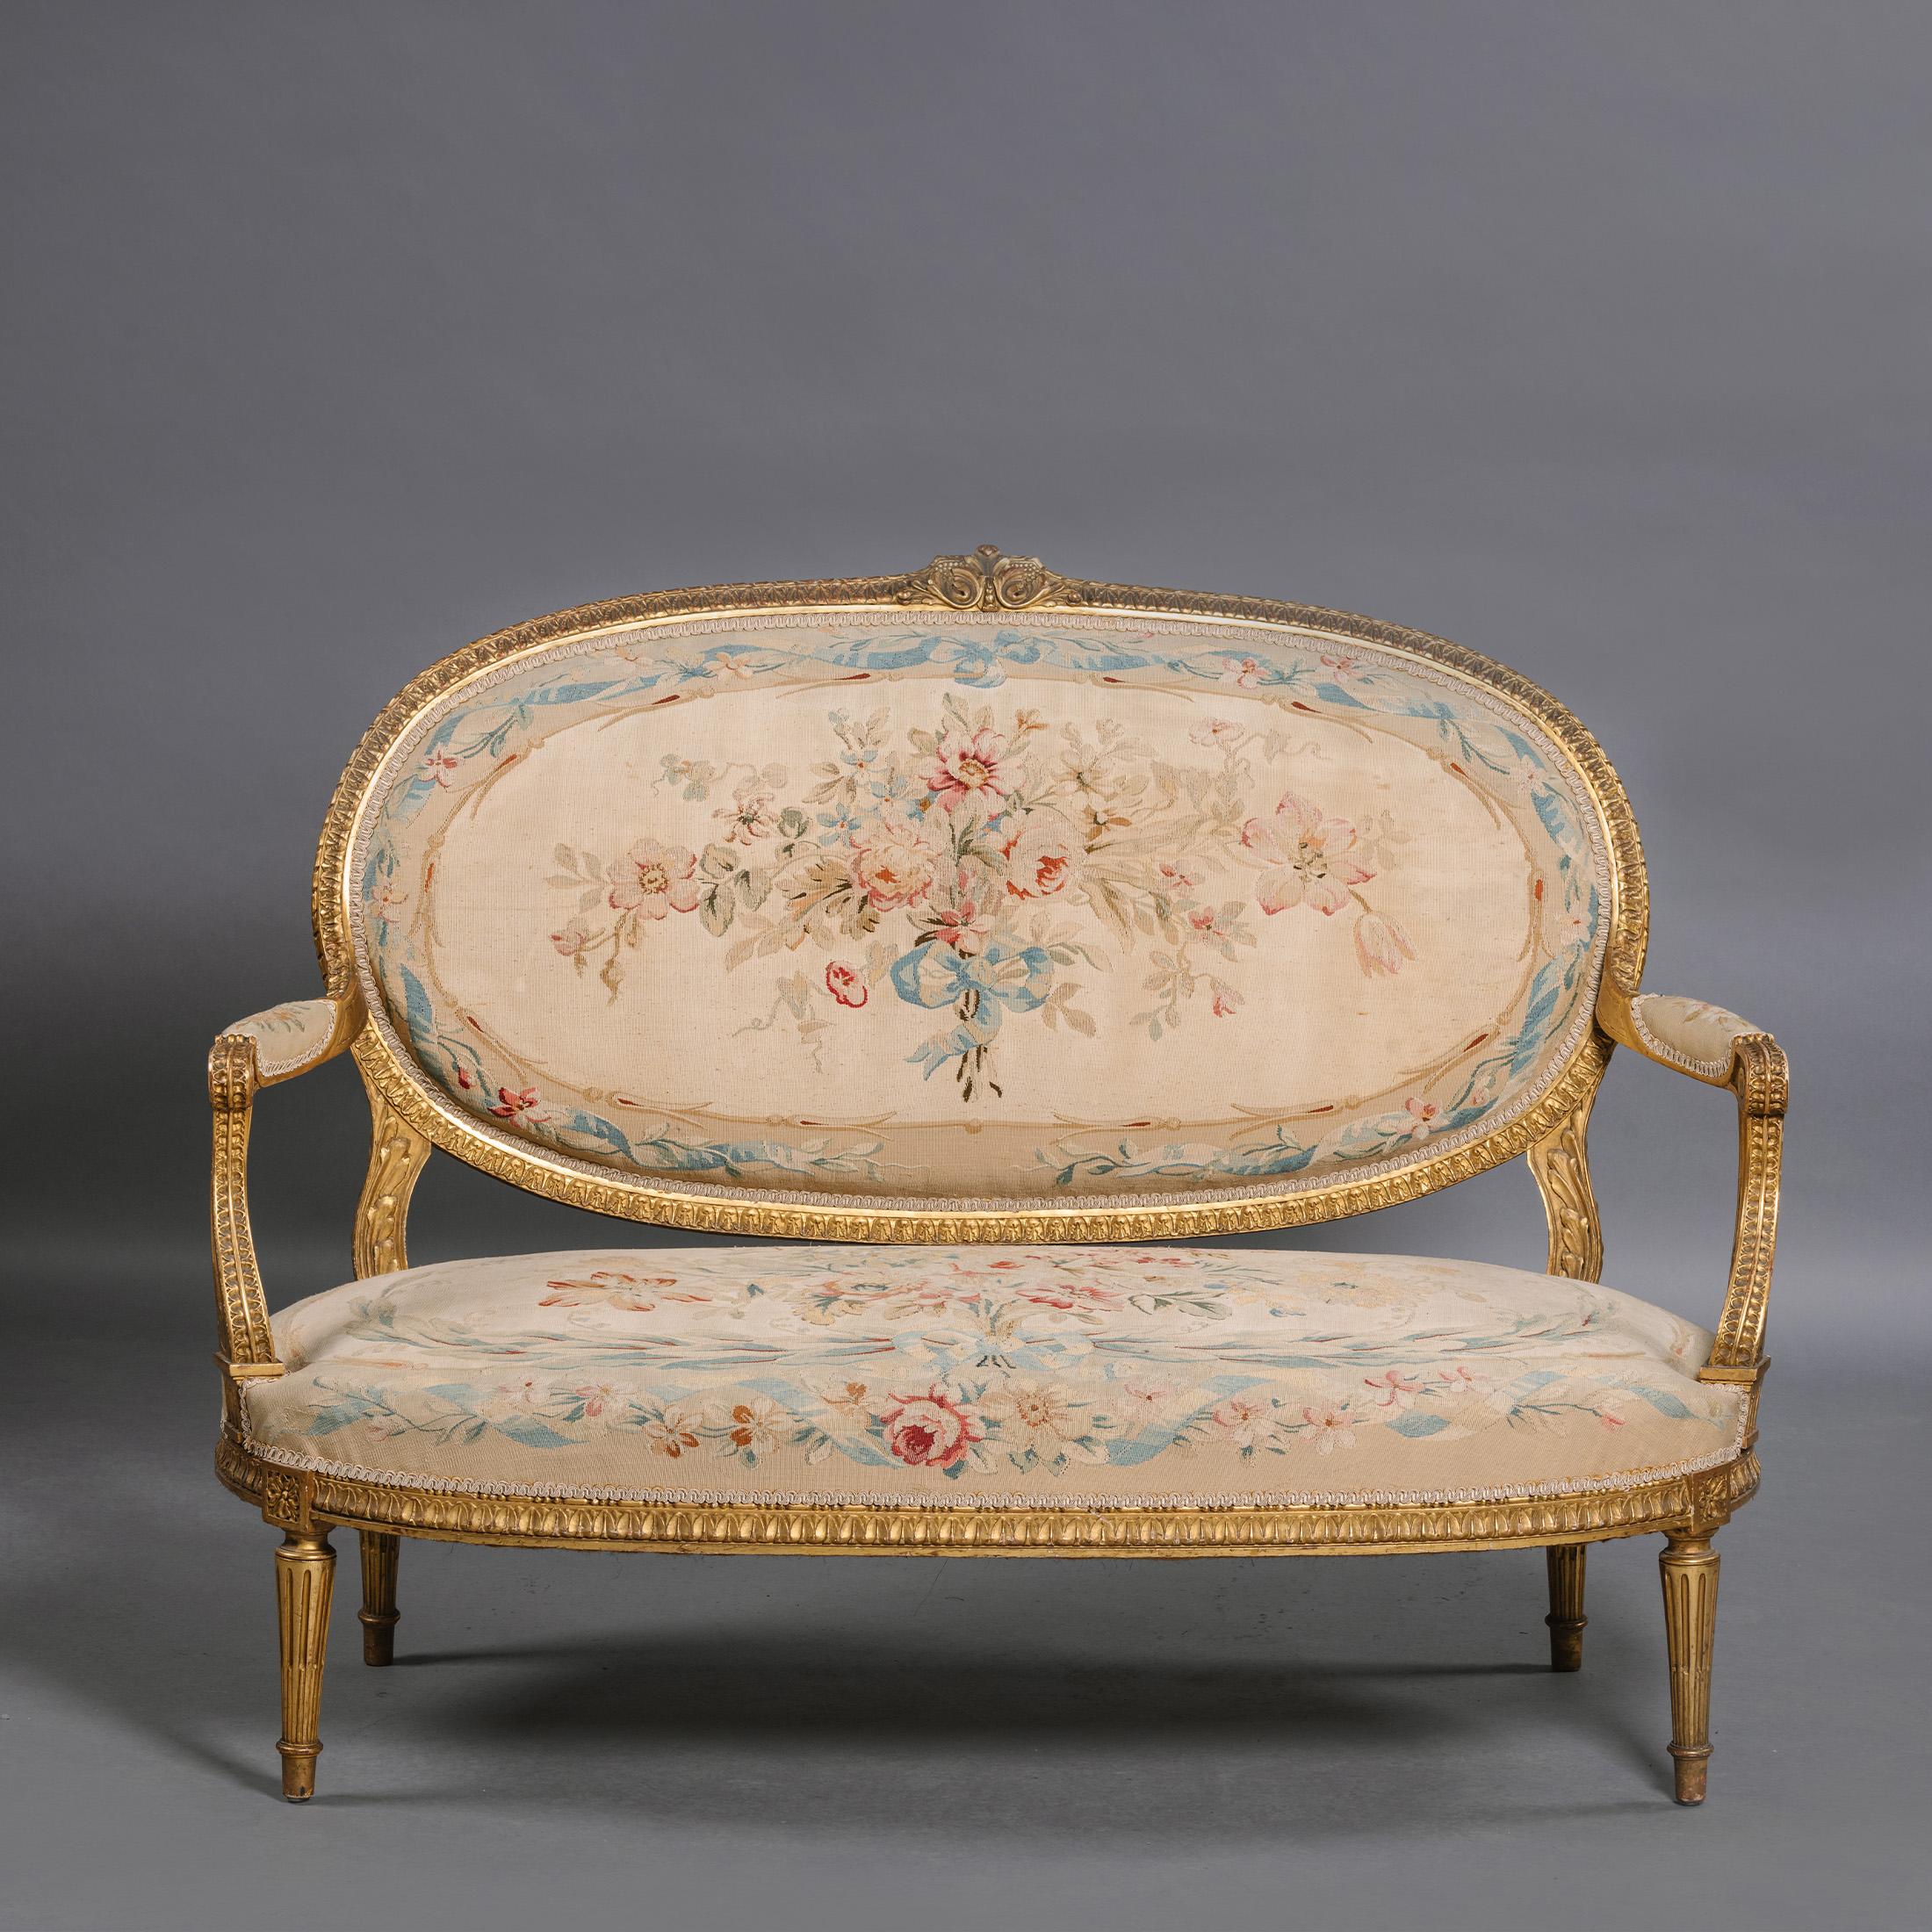 Suite de salon en bois doré et tapisserie d'Aubusson de style Louis XVI, composée de cinq pièces.

Cet ensemble de meubles d'assise comprend quatre fauteuils ouverts aux proportions généreuses et un canapé, en suite. Chacune d'entre elles possède un